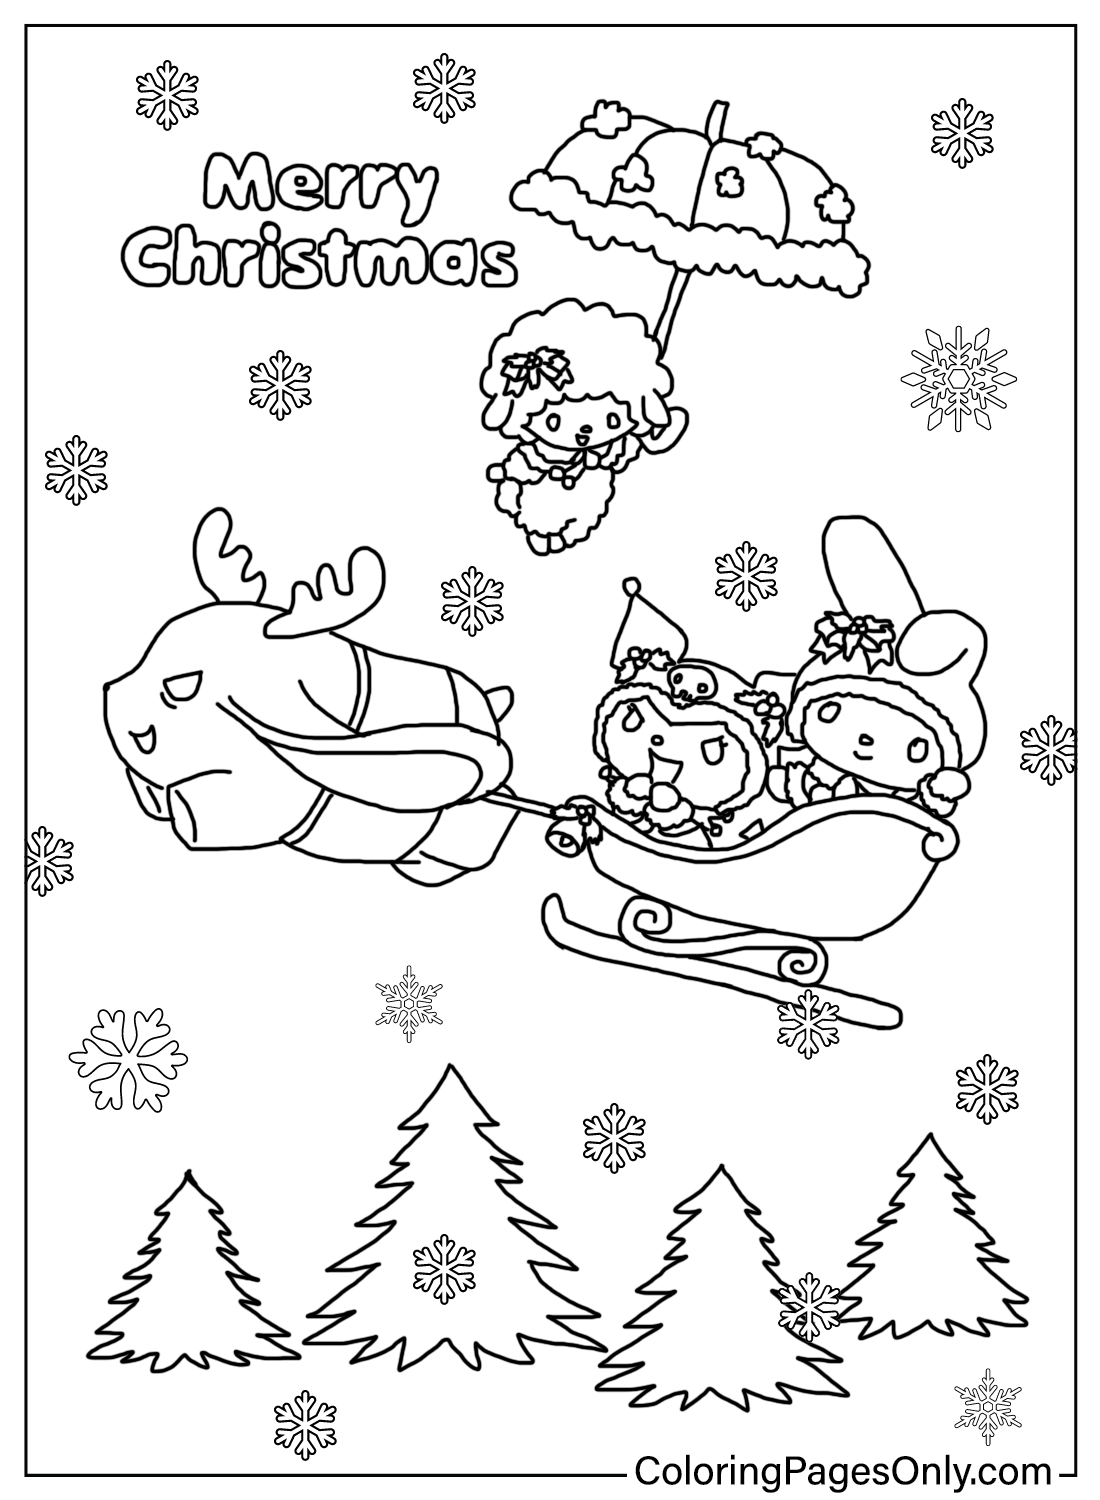 Página para colorear de Navidad Kuromi con melodía de Kuromi